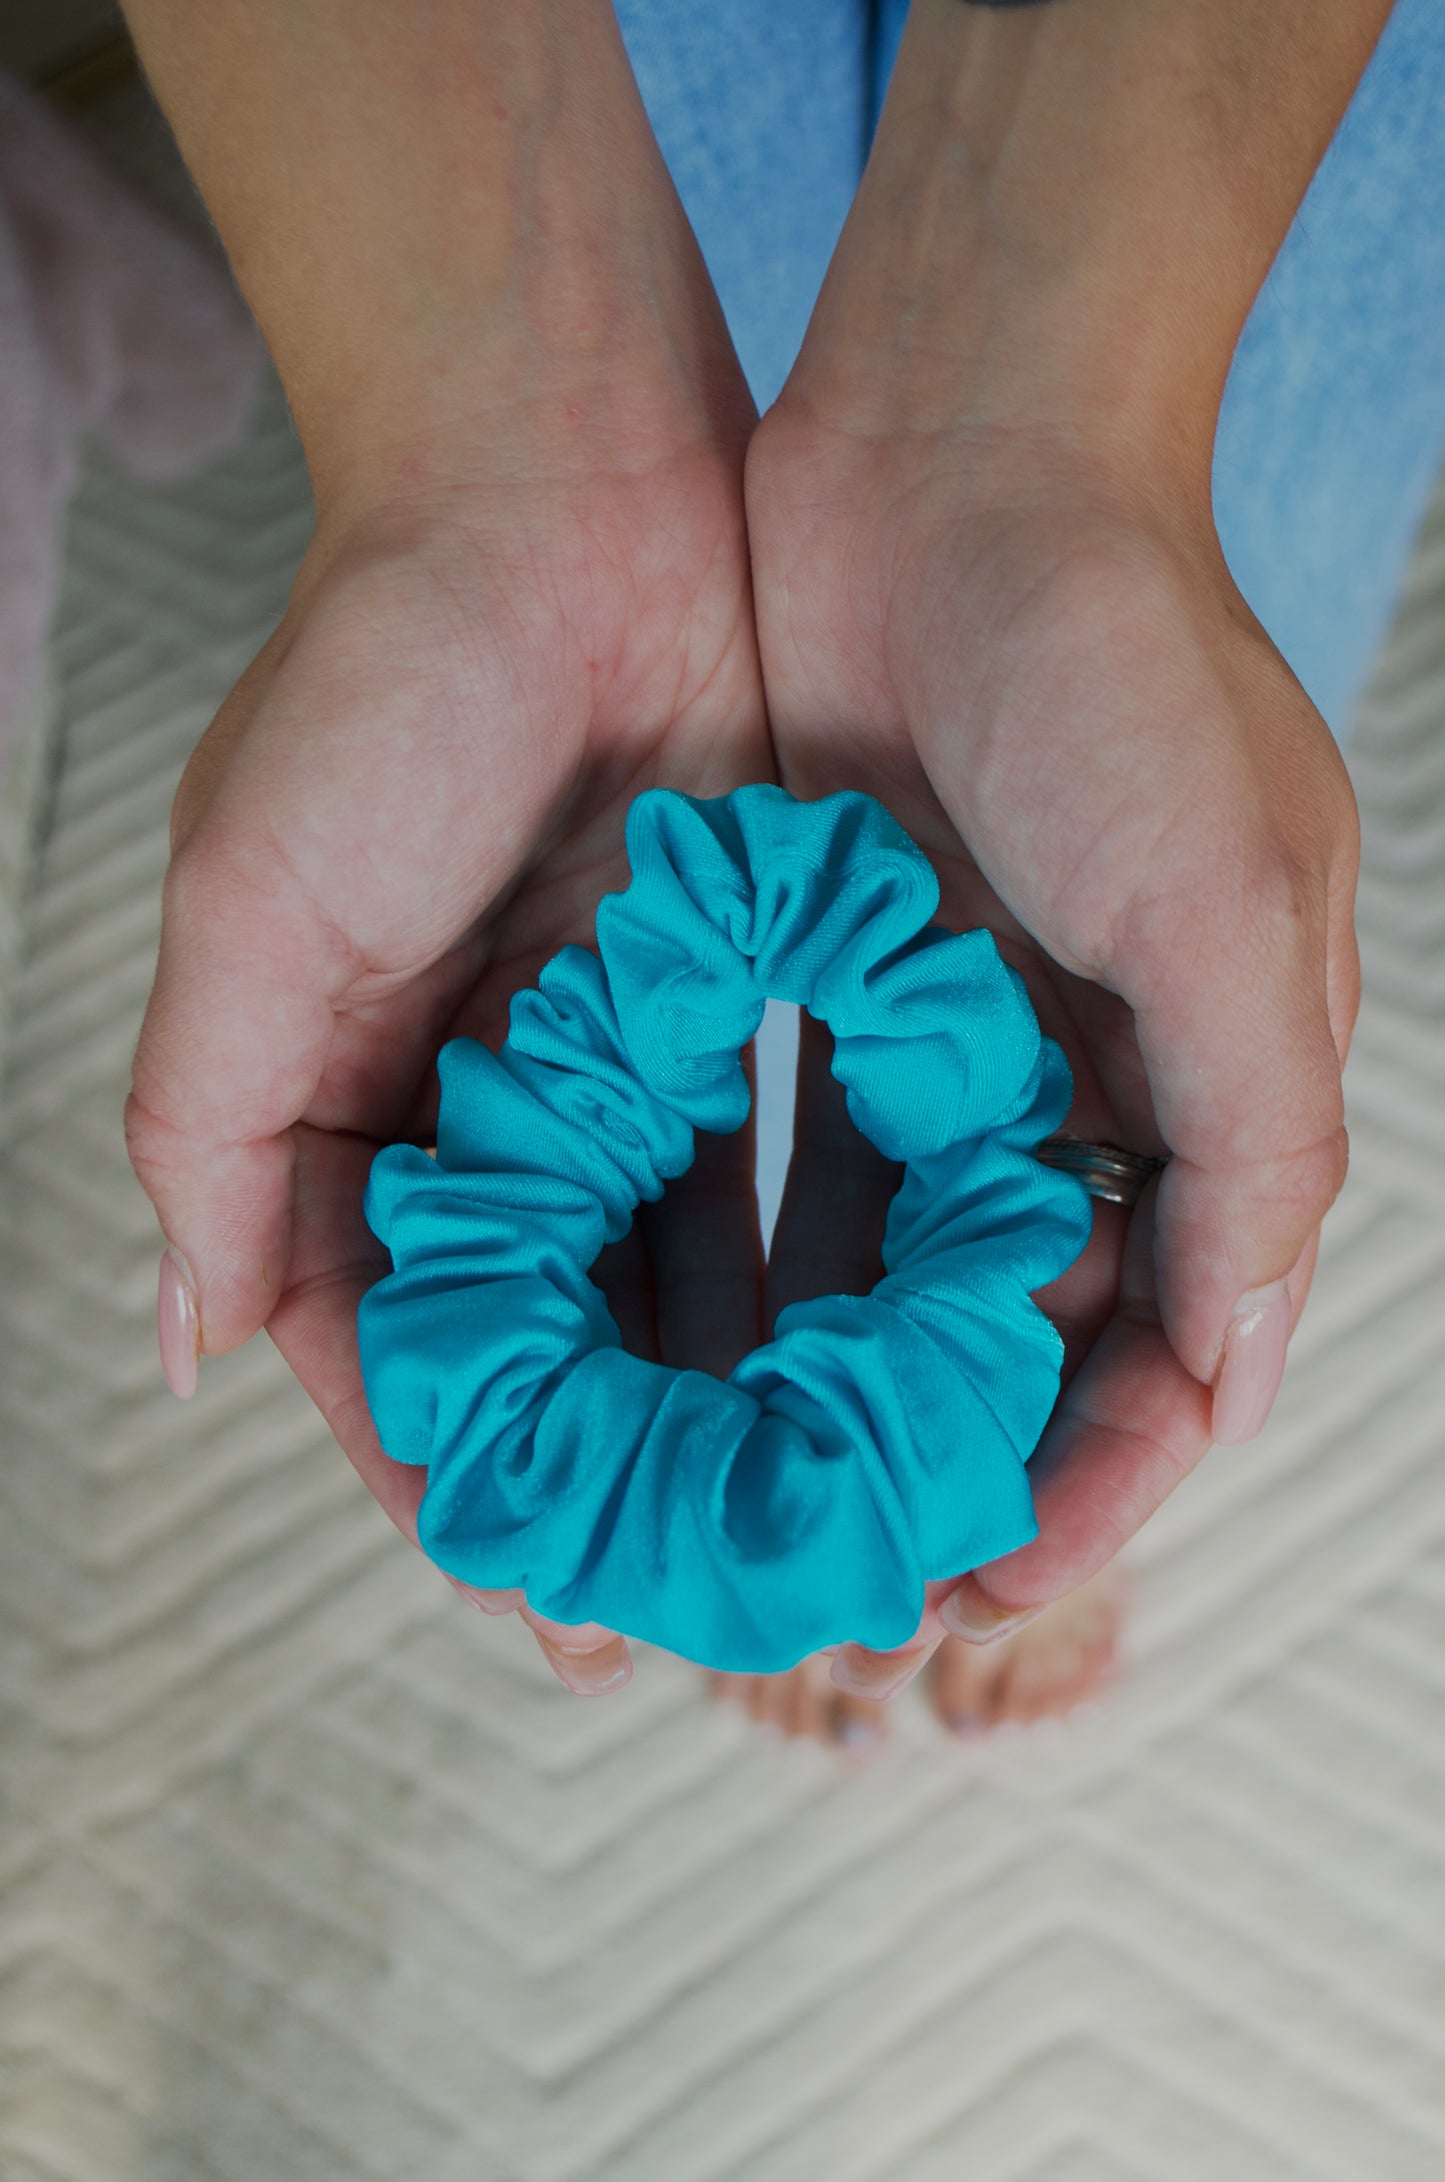 Bluewy Small Scrunchie